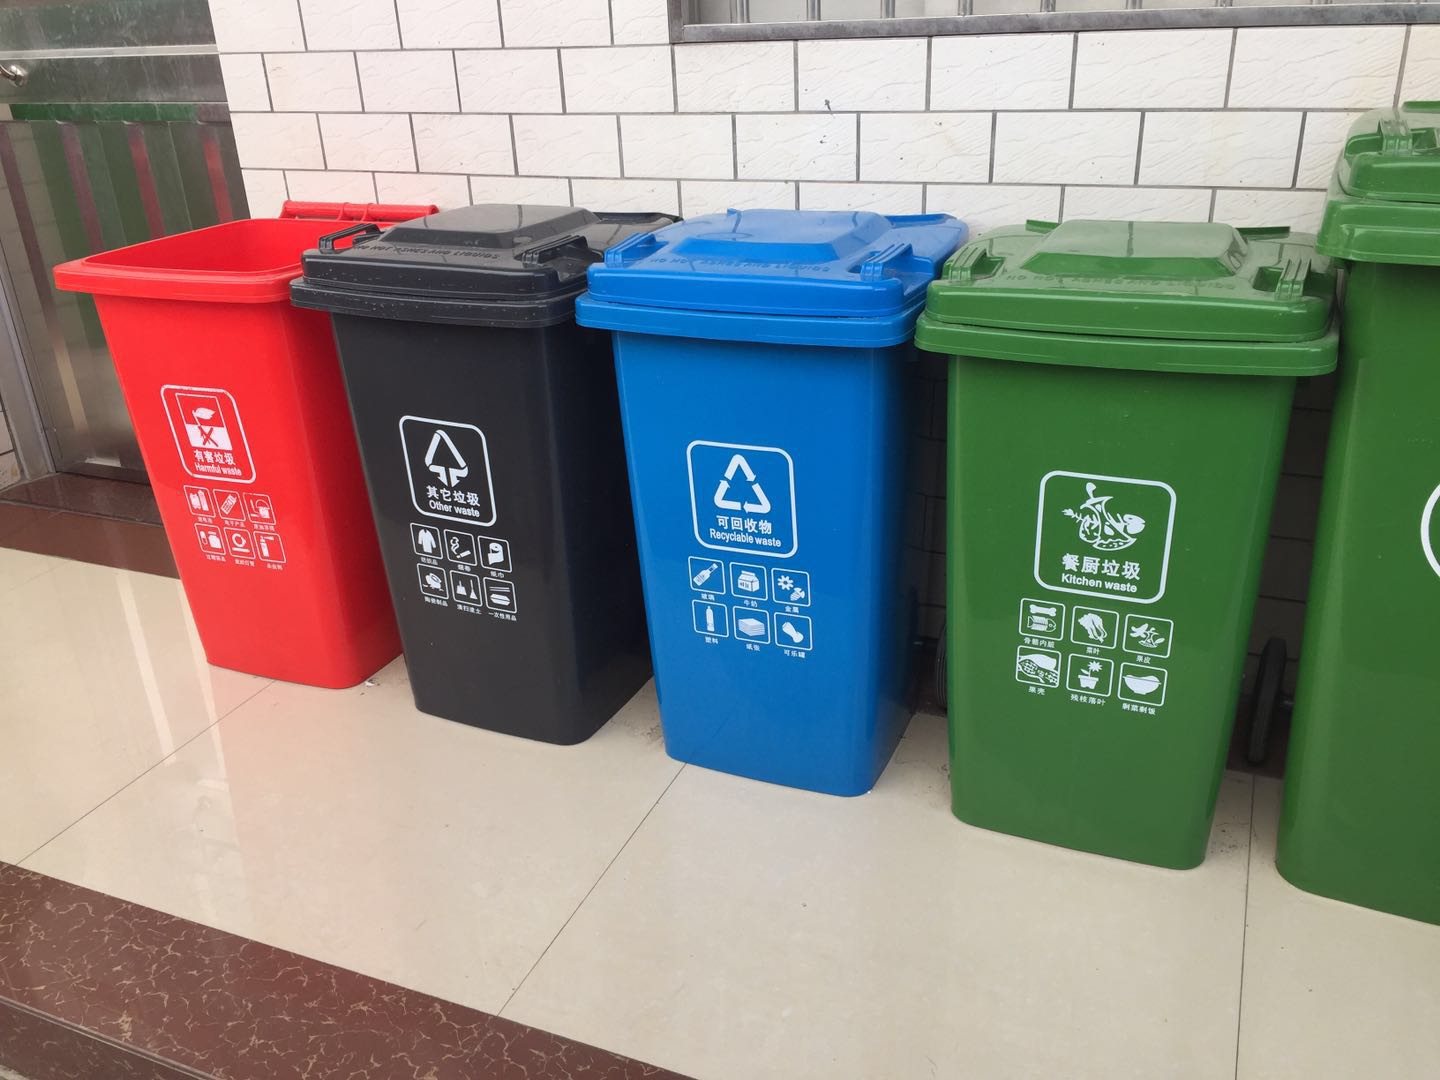 东莞市分类垃圾桶 惠州市户外垃圾桶批发 东莞市塑料垃圾桶厂家电话